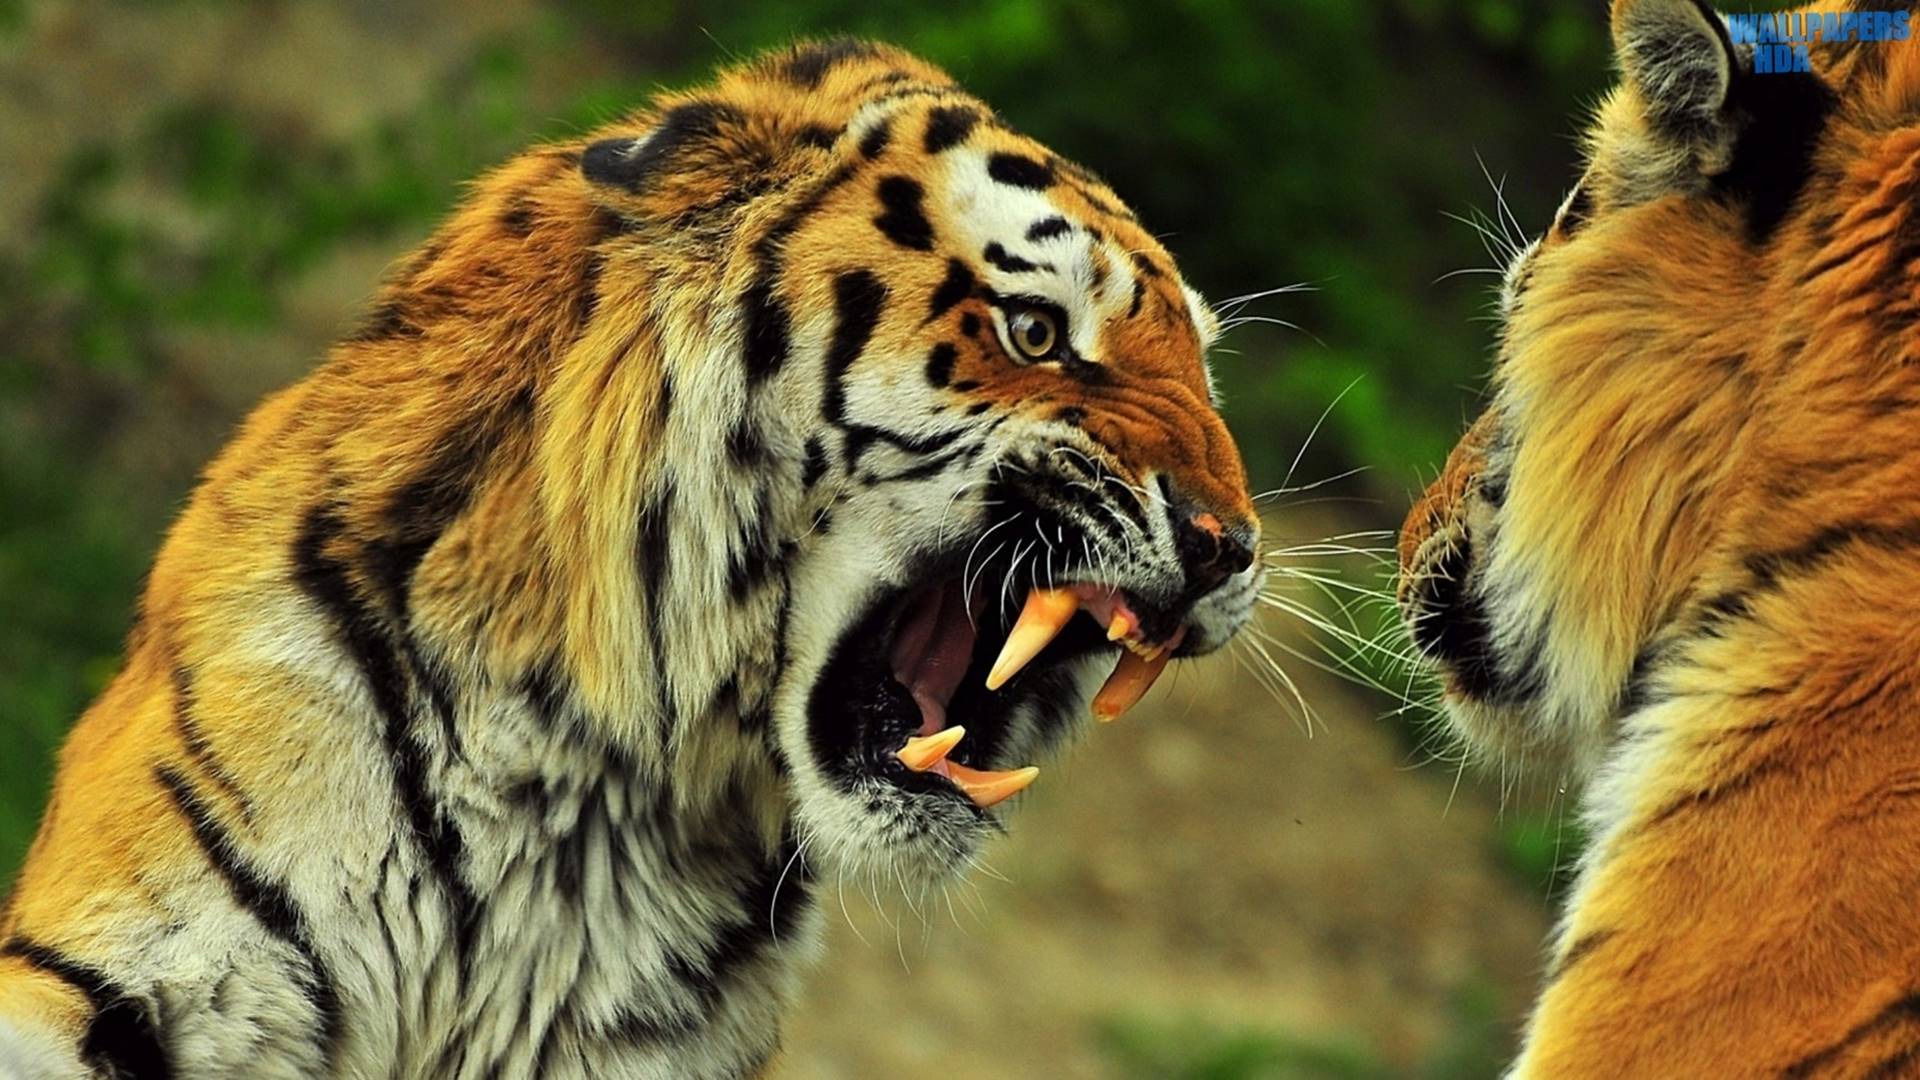 Tigers roaring HD 1920×1080